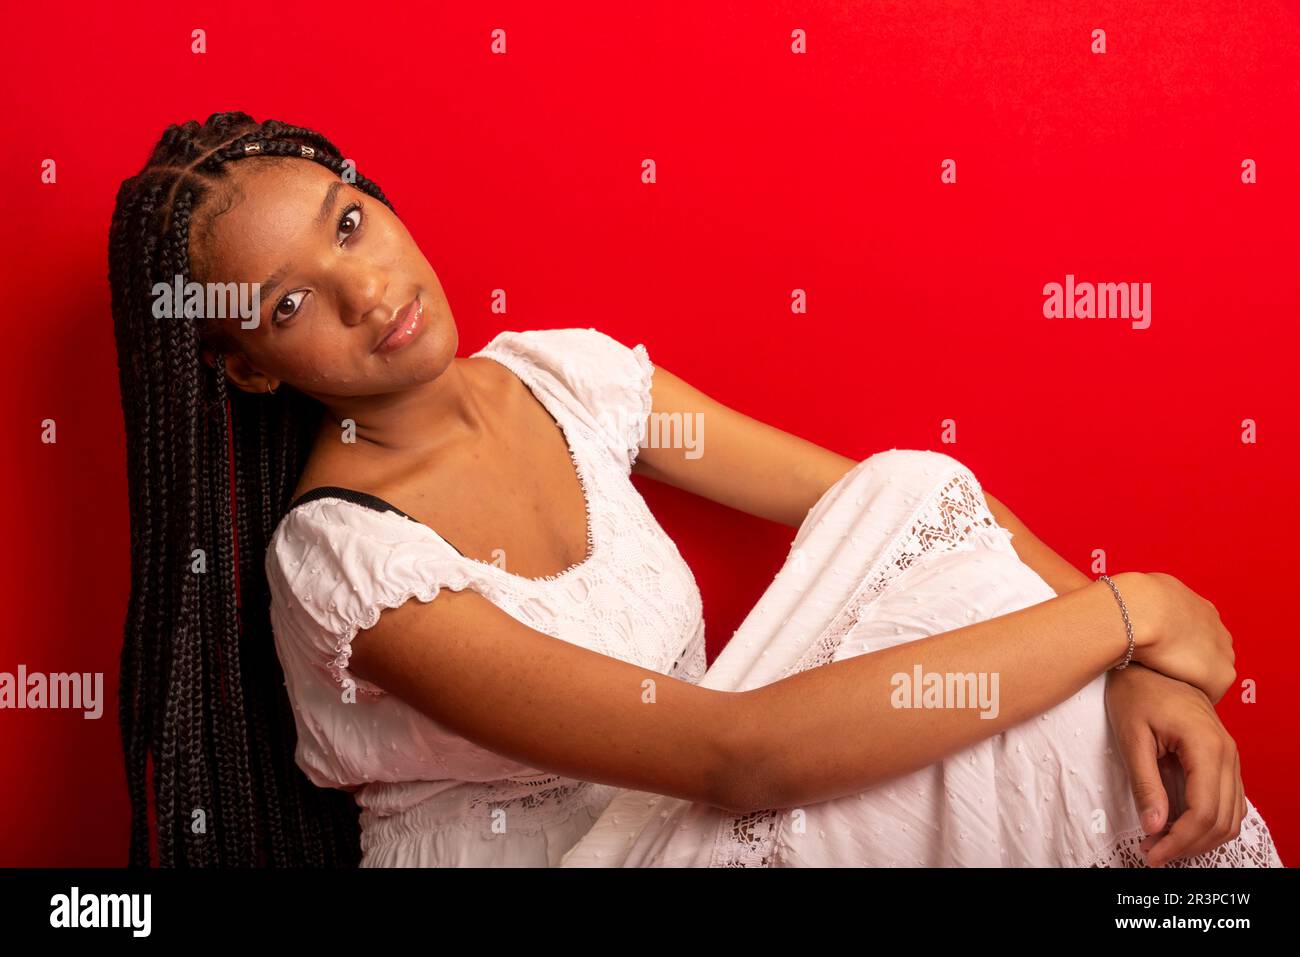 Schöne junge schwarze Frau, die ruhig sitzt und weißes Outfit mit langen Zöpfen trägt. Isoliert auf rotem Hintergrund Stockfoto